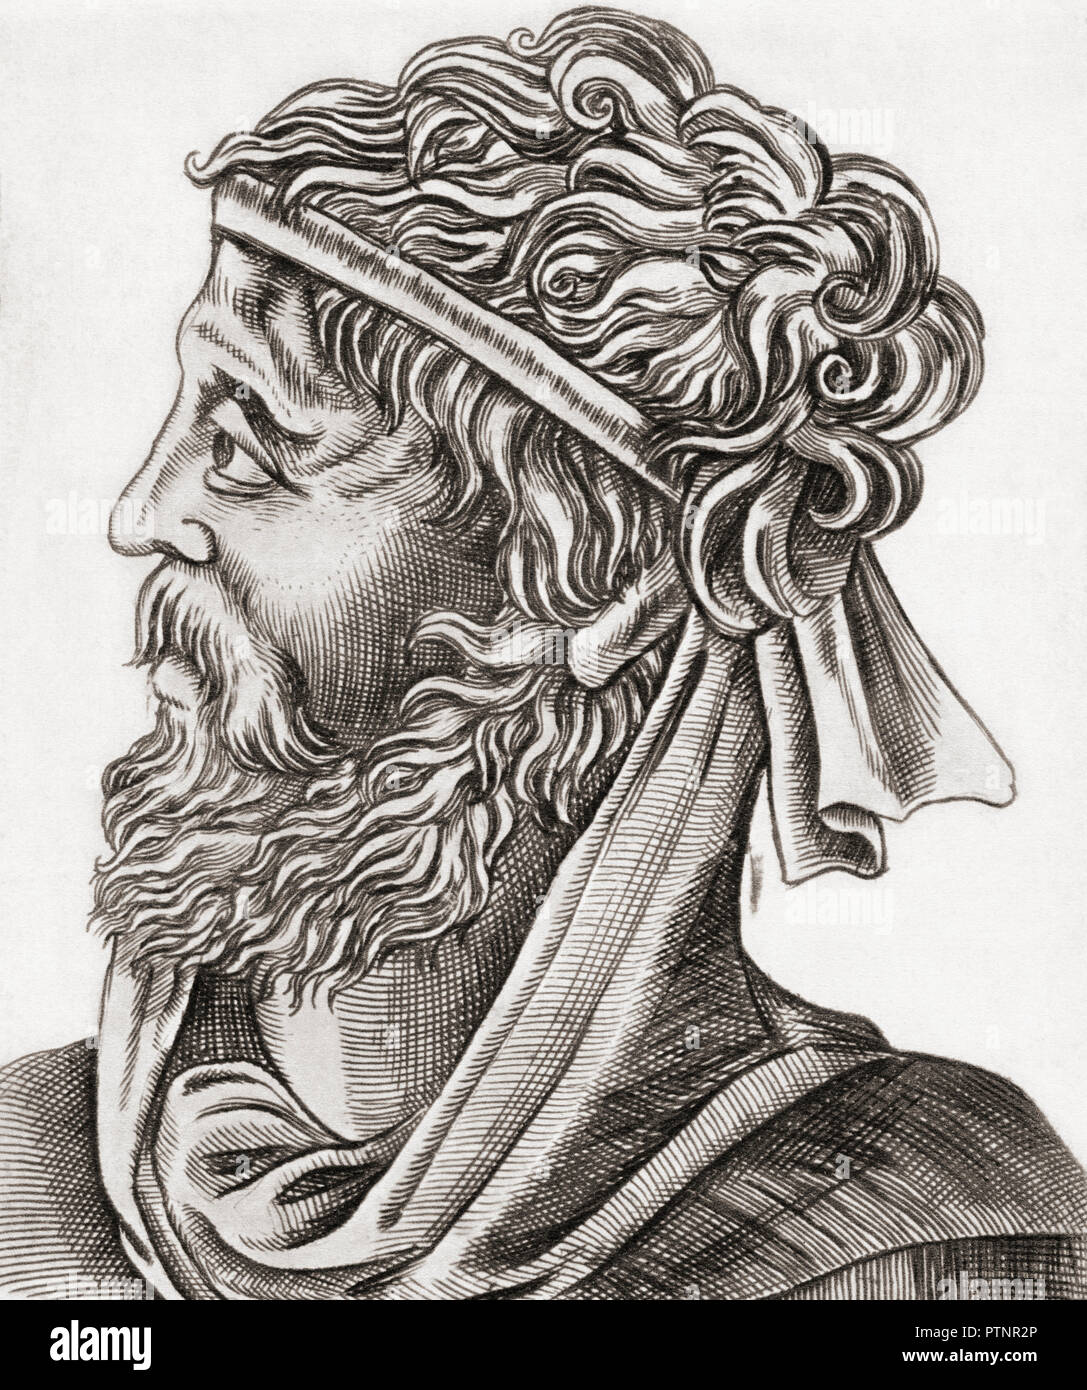 Gaius Valerius Catull, C. 84-C. 54 BC. Lateinische Dichter der späten Römischen Republik. Stockfoto